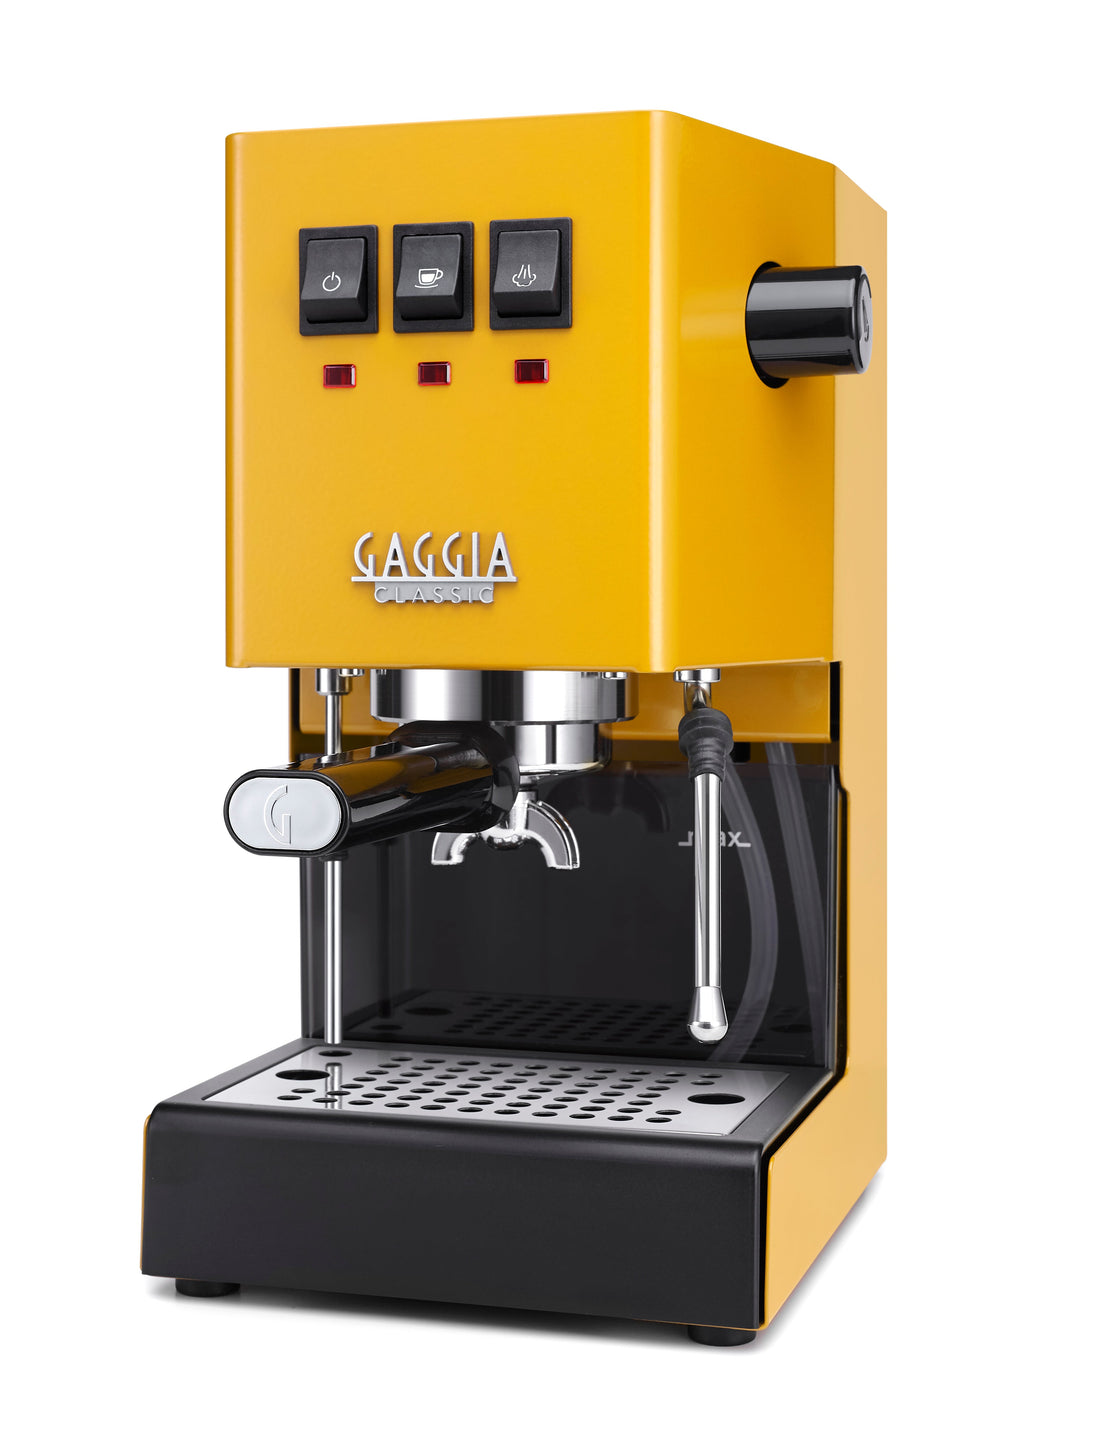 Gaggia Classic Evo Pro Semi-Automatic Espresso Machine in Sunshine Yellow